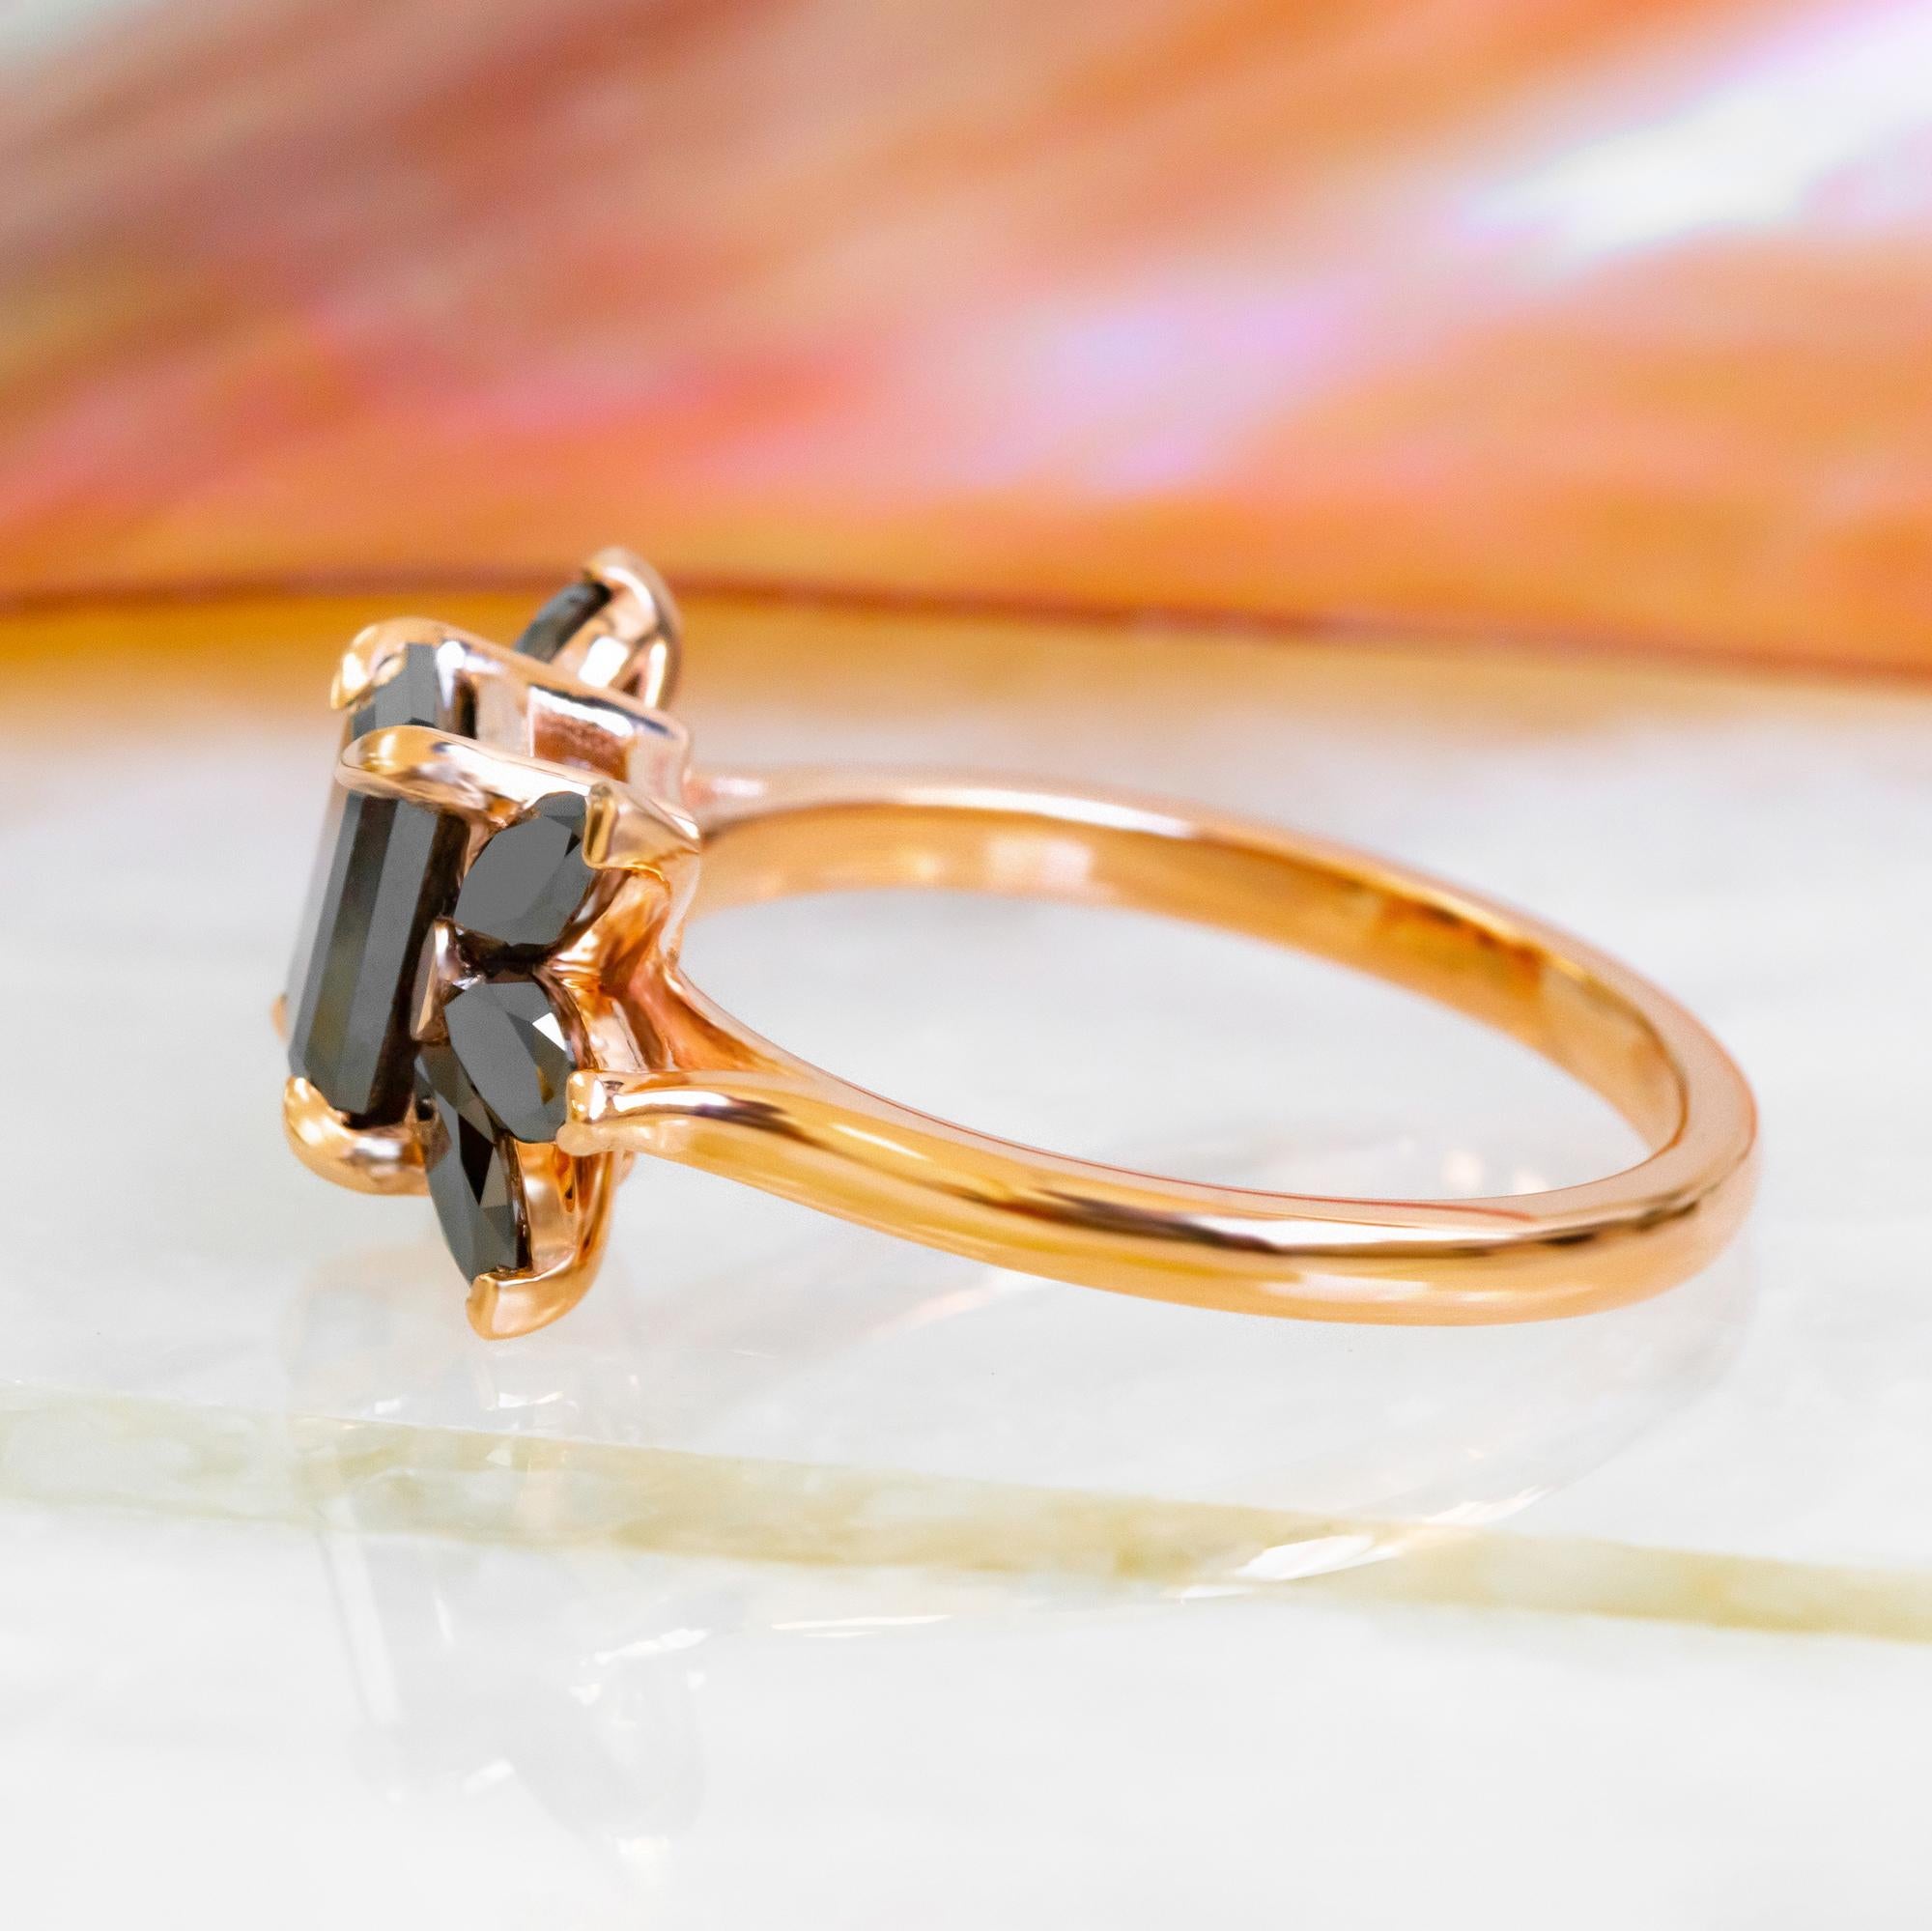 Schöner schwarzer Smaragd Diamant Verlobungsring mit natürlichen schwarzen Diamanten in 14K Rose Gold Cluster Ring, Smaragd und Marquise schwarzer Diamant
DianRafaelJewelry Einzigartige Black Ice Kollektion

---------Item